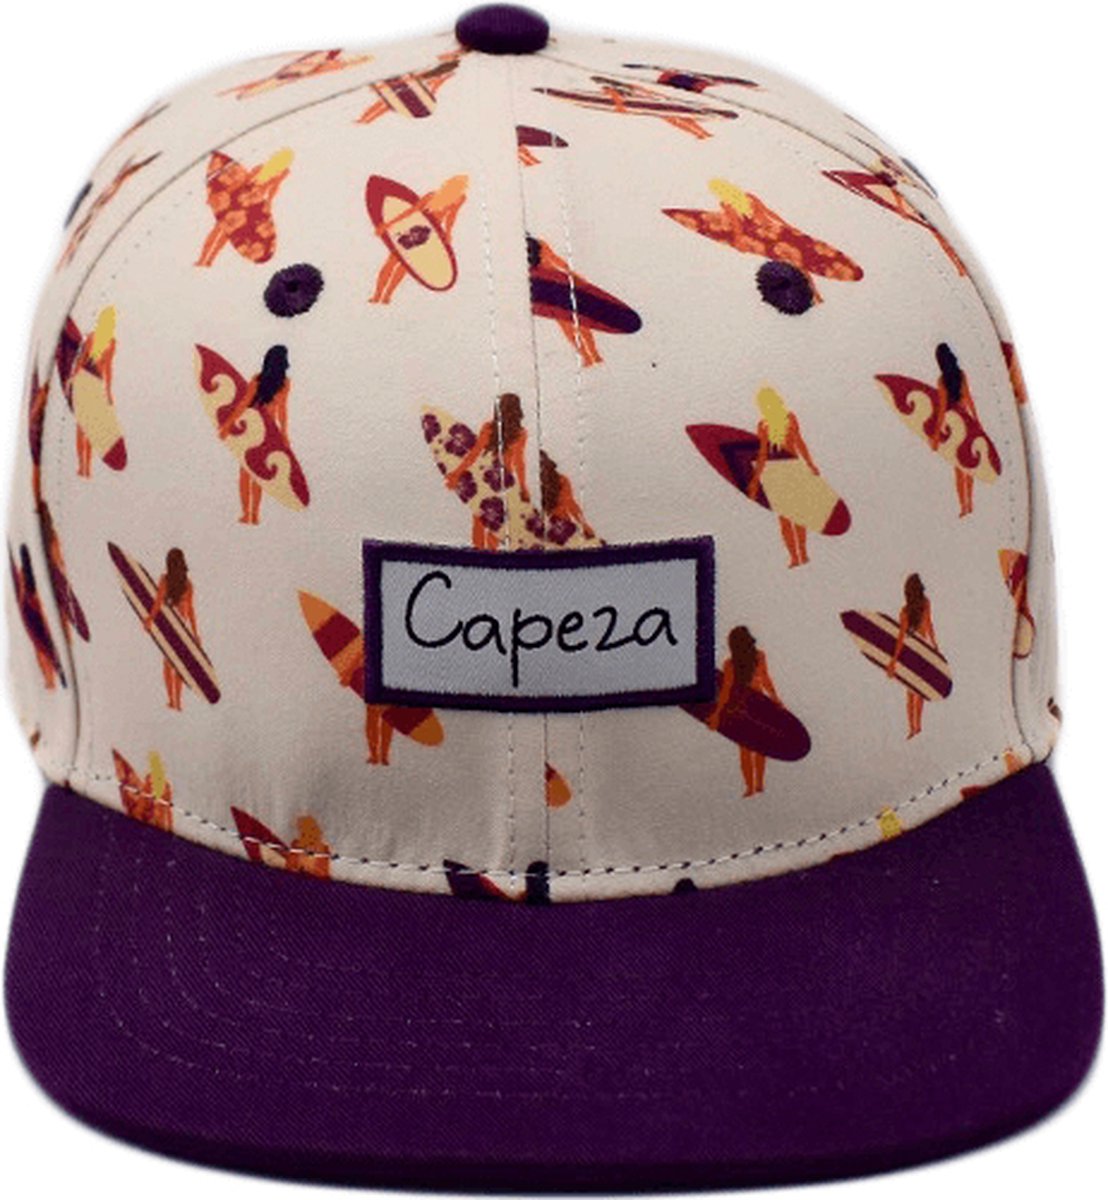 Capeza - Inès - Kind 6 jaar en hoger - Snapback kind - Kinderpet - Zomerpet - Pet voor kinderen - snapback cap